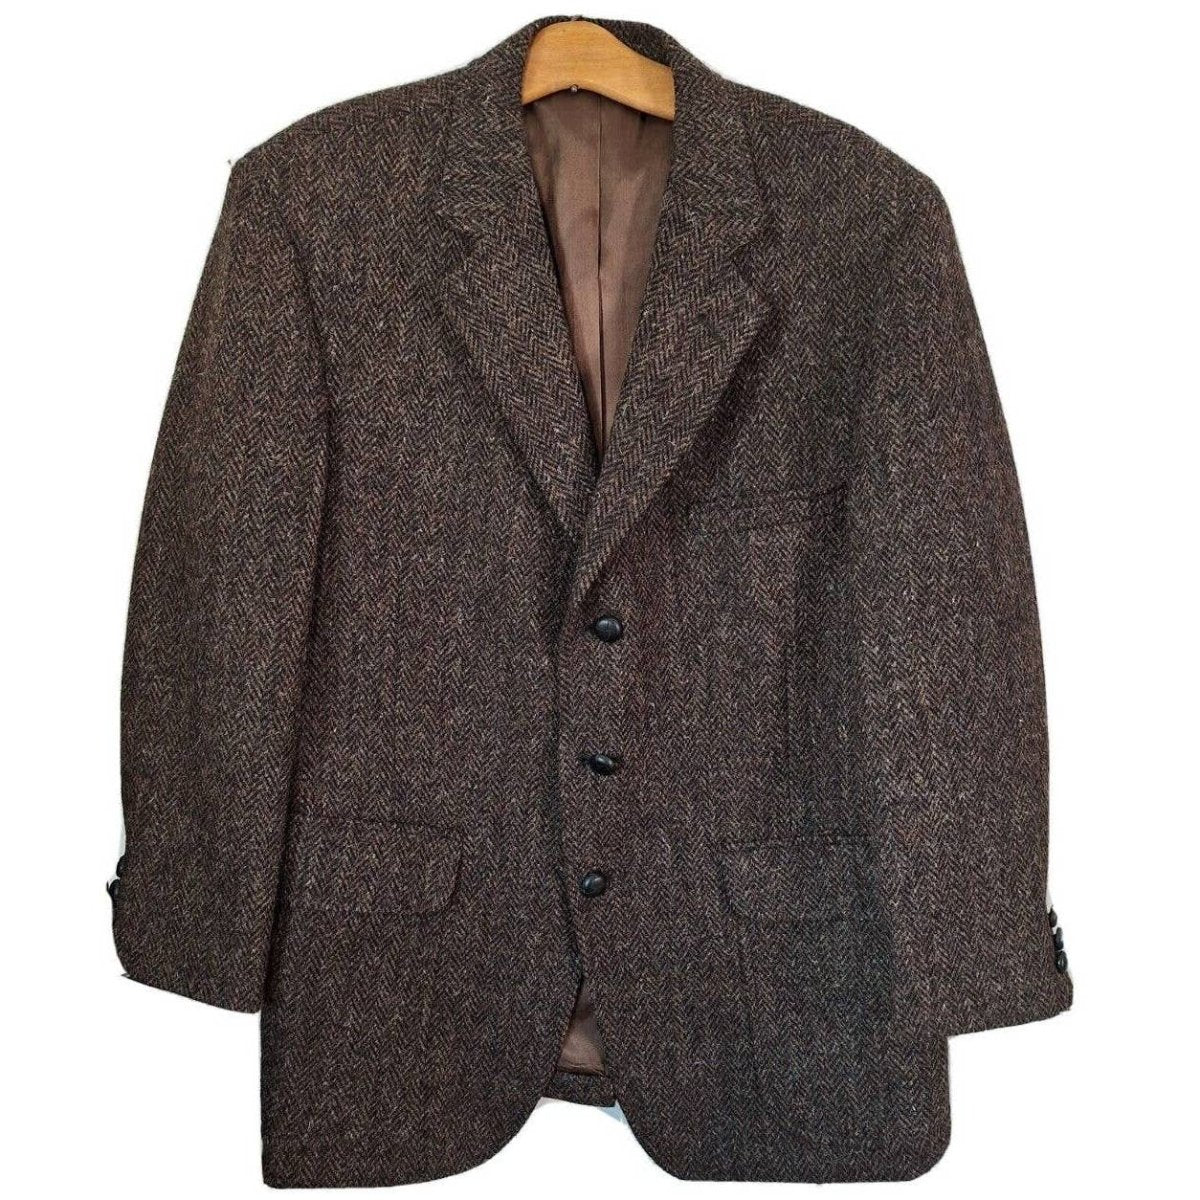 Vintage Wool Herringbone Sport Jacket 40-41 Short - themallvintage The Mall Vintage